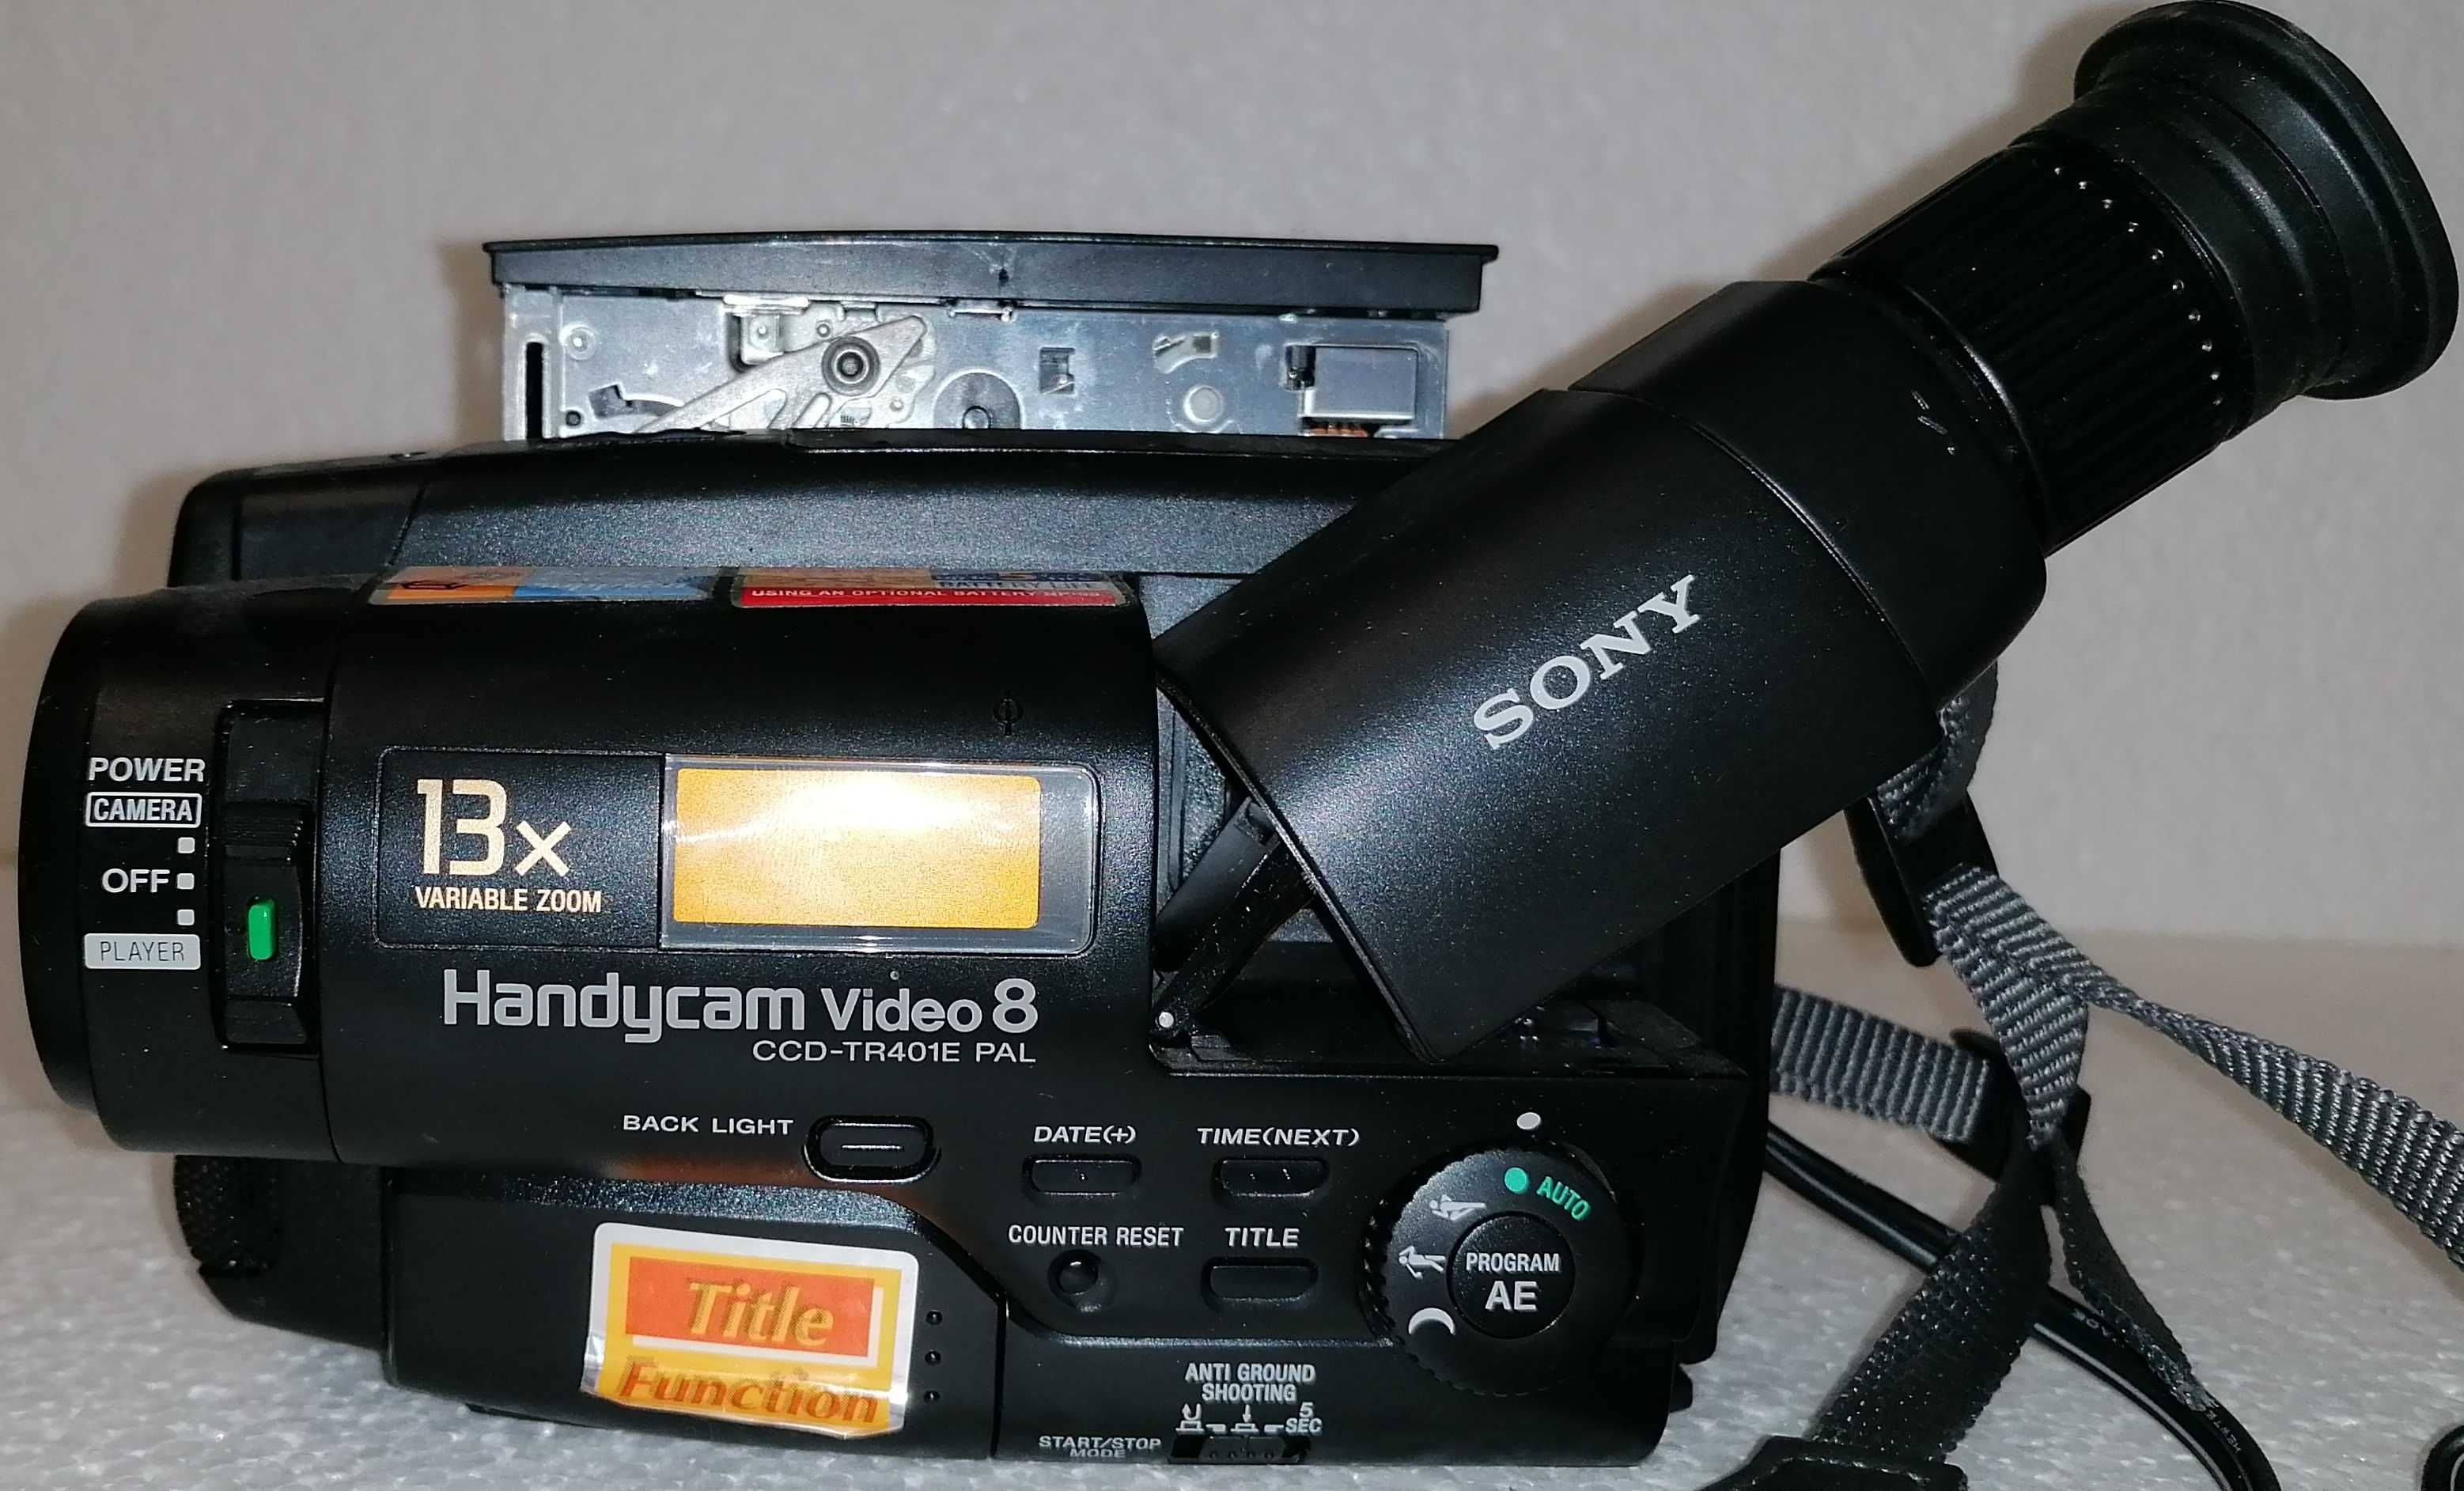 Camara de filmar " Vídeo 8", da Sony, CCD-TR401E